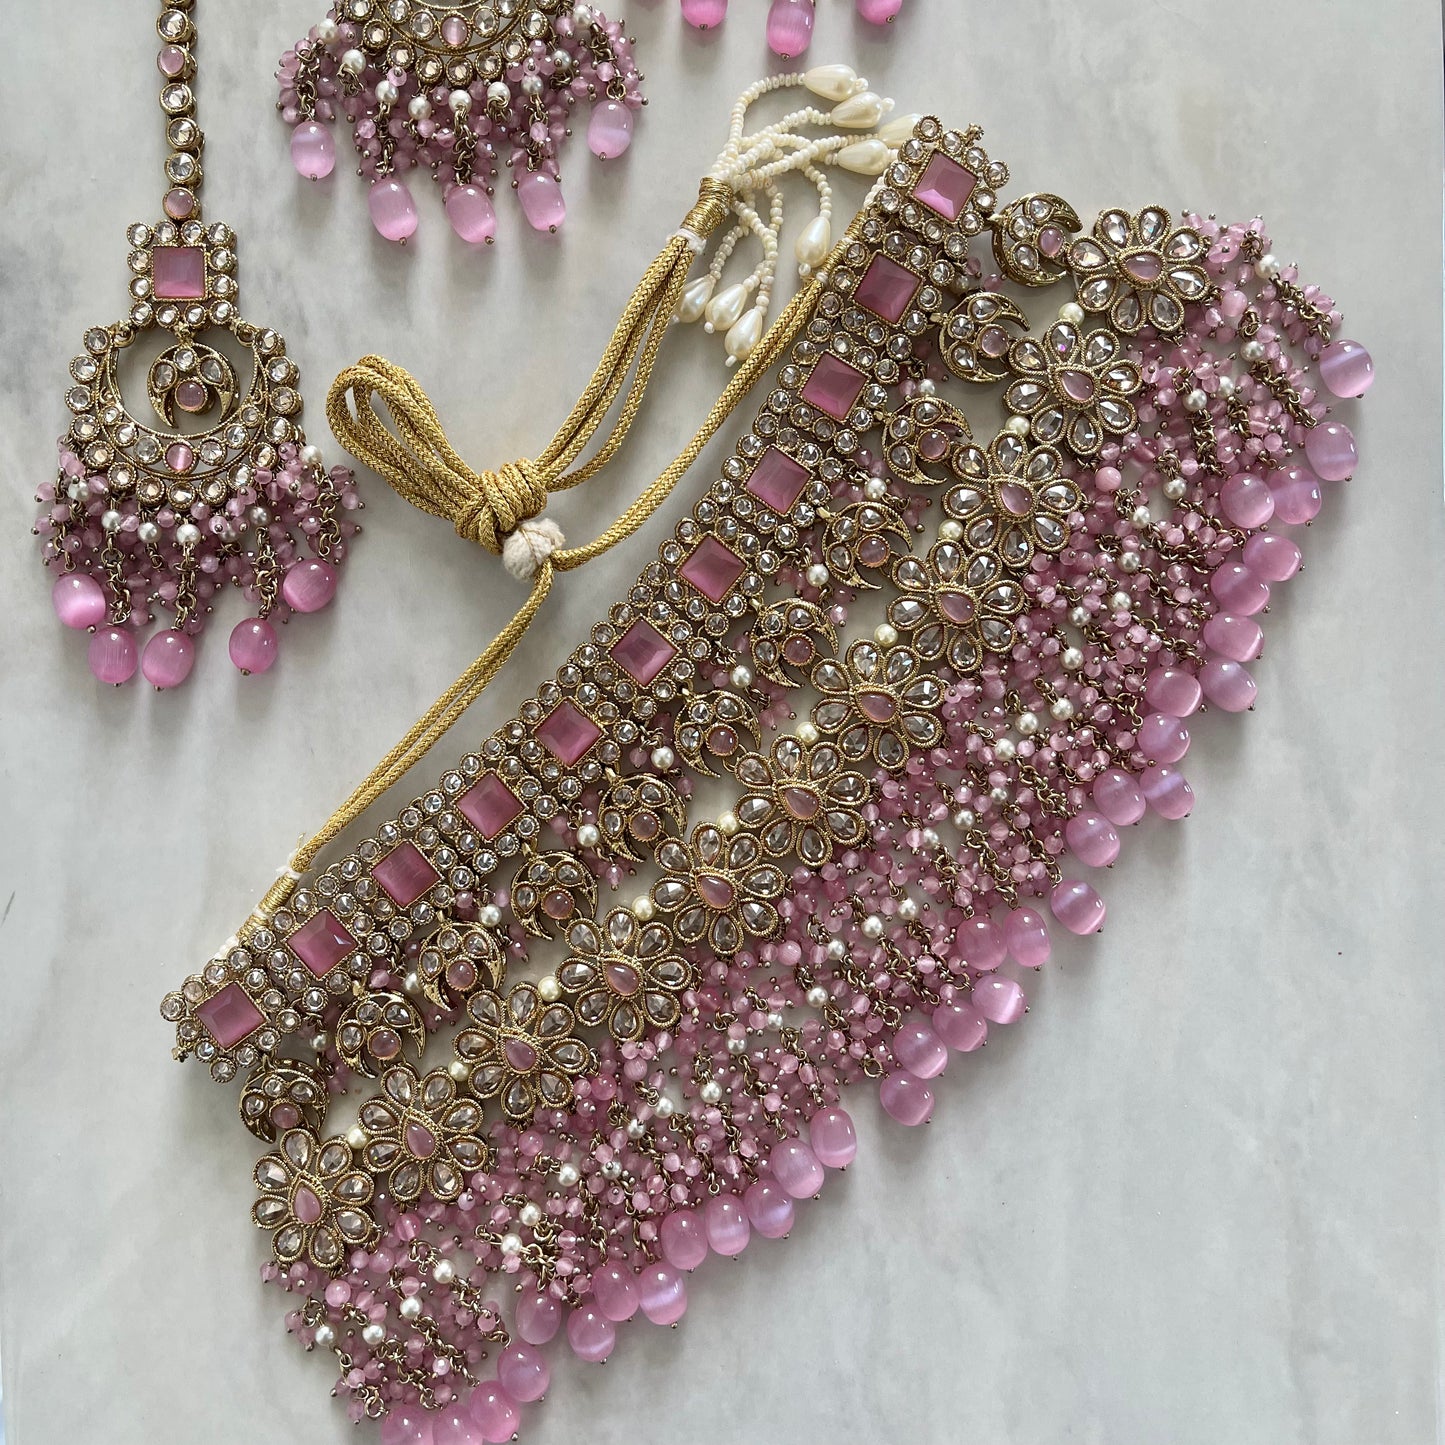 Paris Bridal Choker Polki Necklace Set in Pink